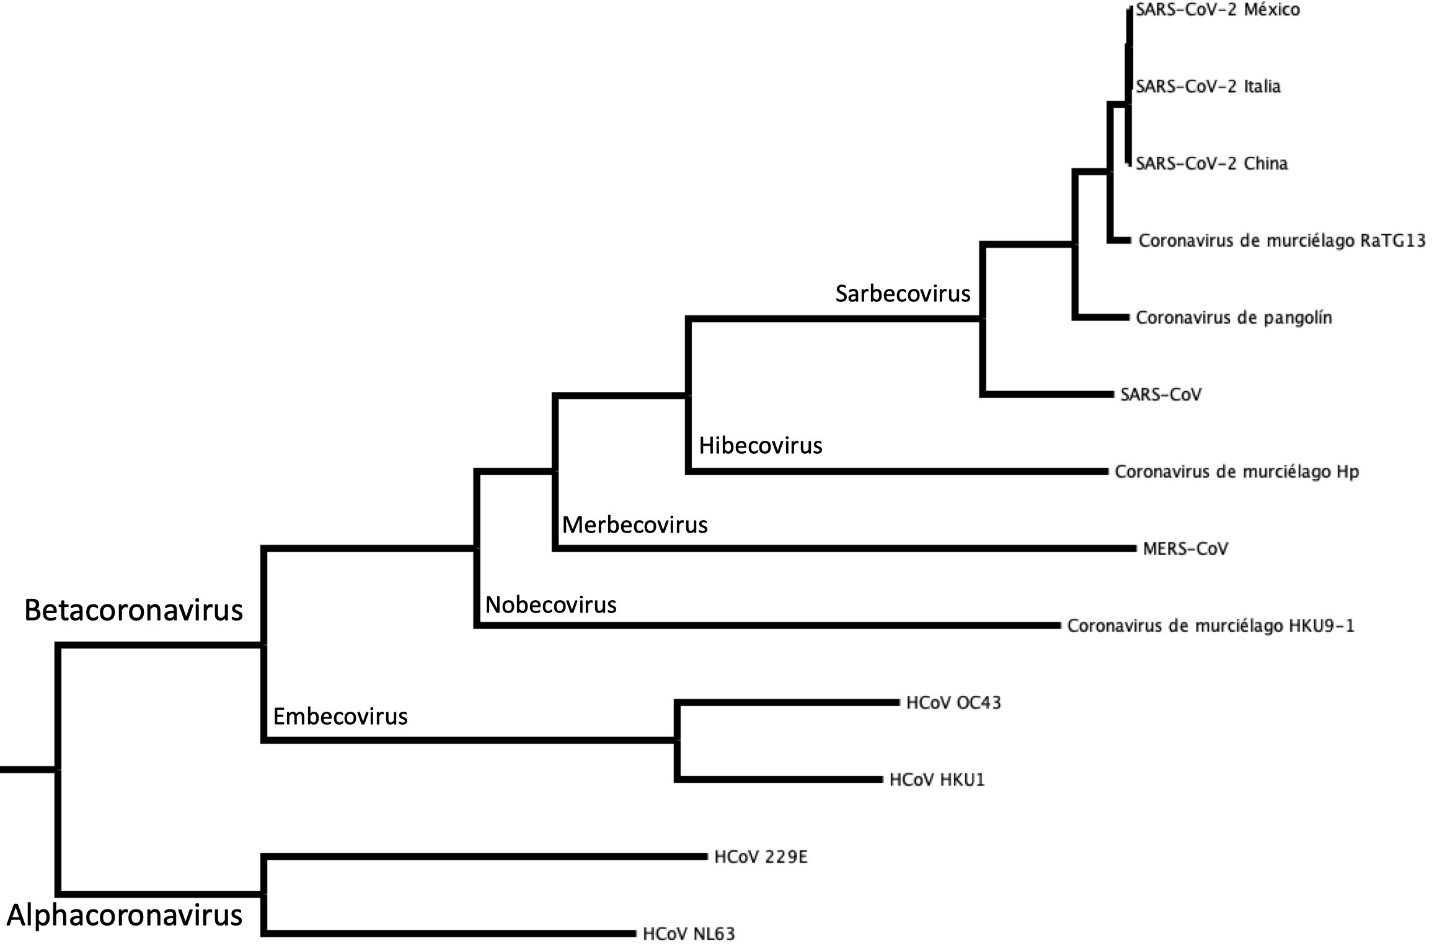 Figura 1. Relación evolutiva entre los coronavirus del género betacoronavirus. Árbol filogenético de máxima verosimilitud realizado con los genomas completos de 13 coronavirus. Cada par de ramas parte de un nodo (origen) común. Cada nodo representa a un ancestro común. La distancia al nodo refleja el tiempo de divergencia desde el ancestro. Por ejemplo, SARS-CoV-2 de México tiene un ancestro común más cercano con el SARS-CoV-2 de Italia que con el MERS-CoV. Significa que ha pasado menos tiempo desde que las variantes de SARS-CoV-2 de México e Italia se separaron a partir de una misma población. Creada por Alejandro Miguel Cisneros Martínez.